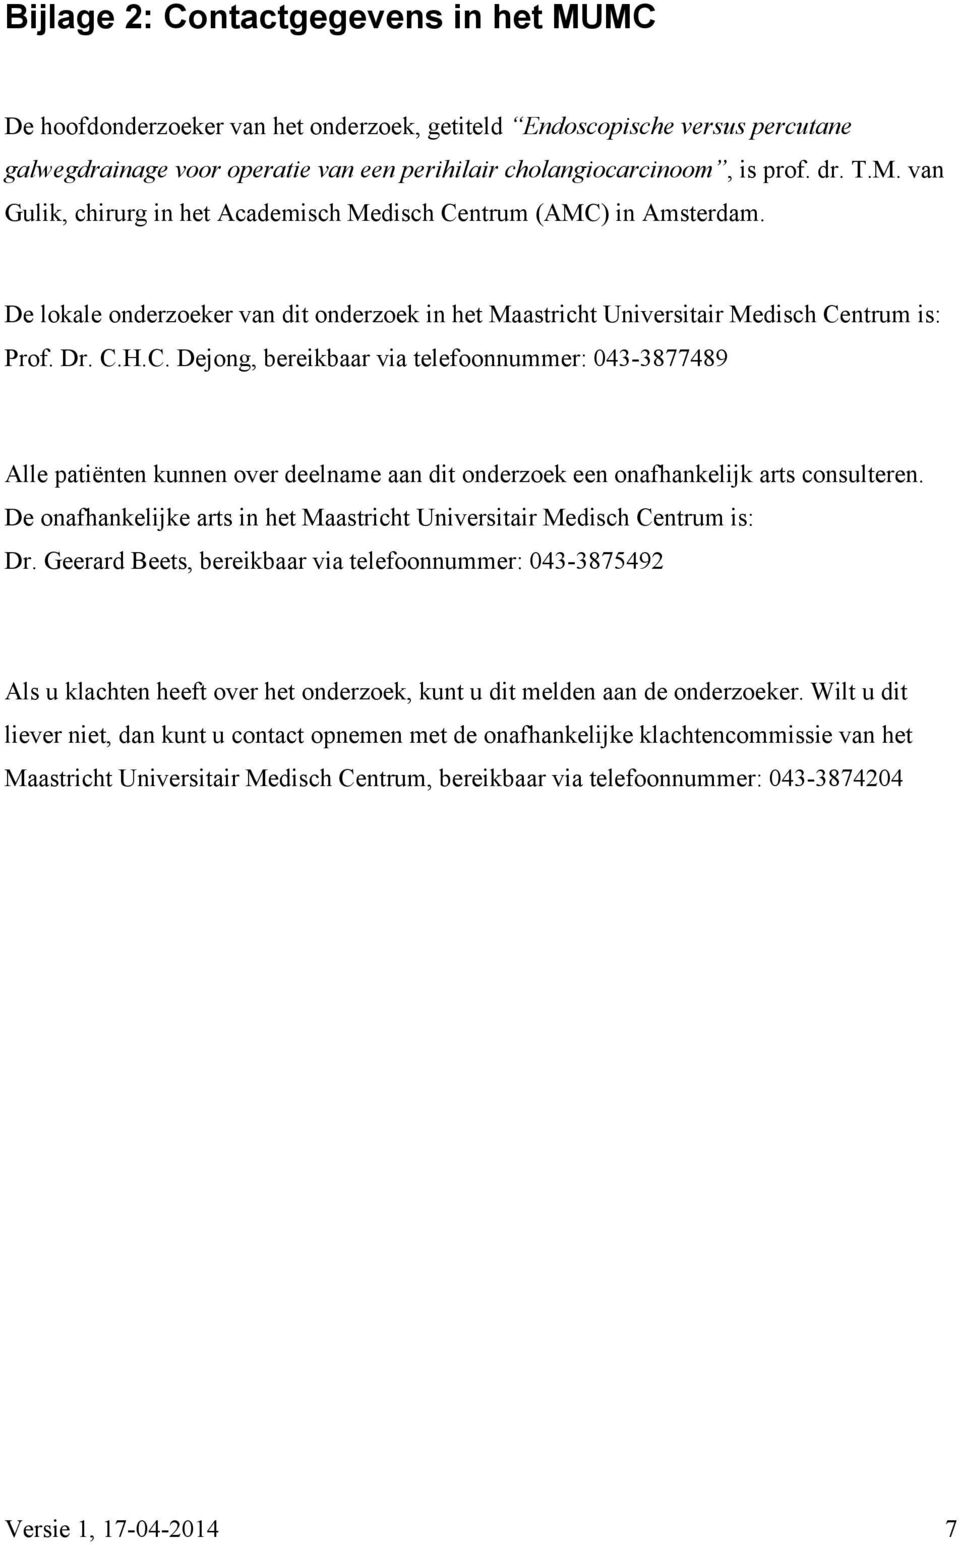 De onafhankelijke arts in het Maastricht Universitair Medisch Centrum is: Dr.